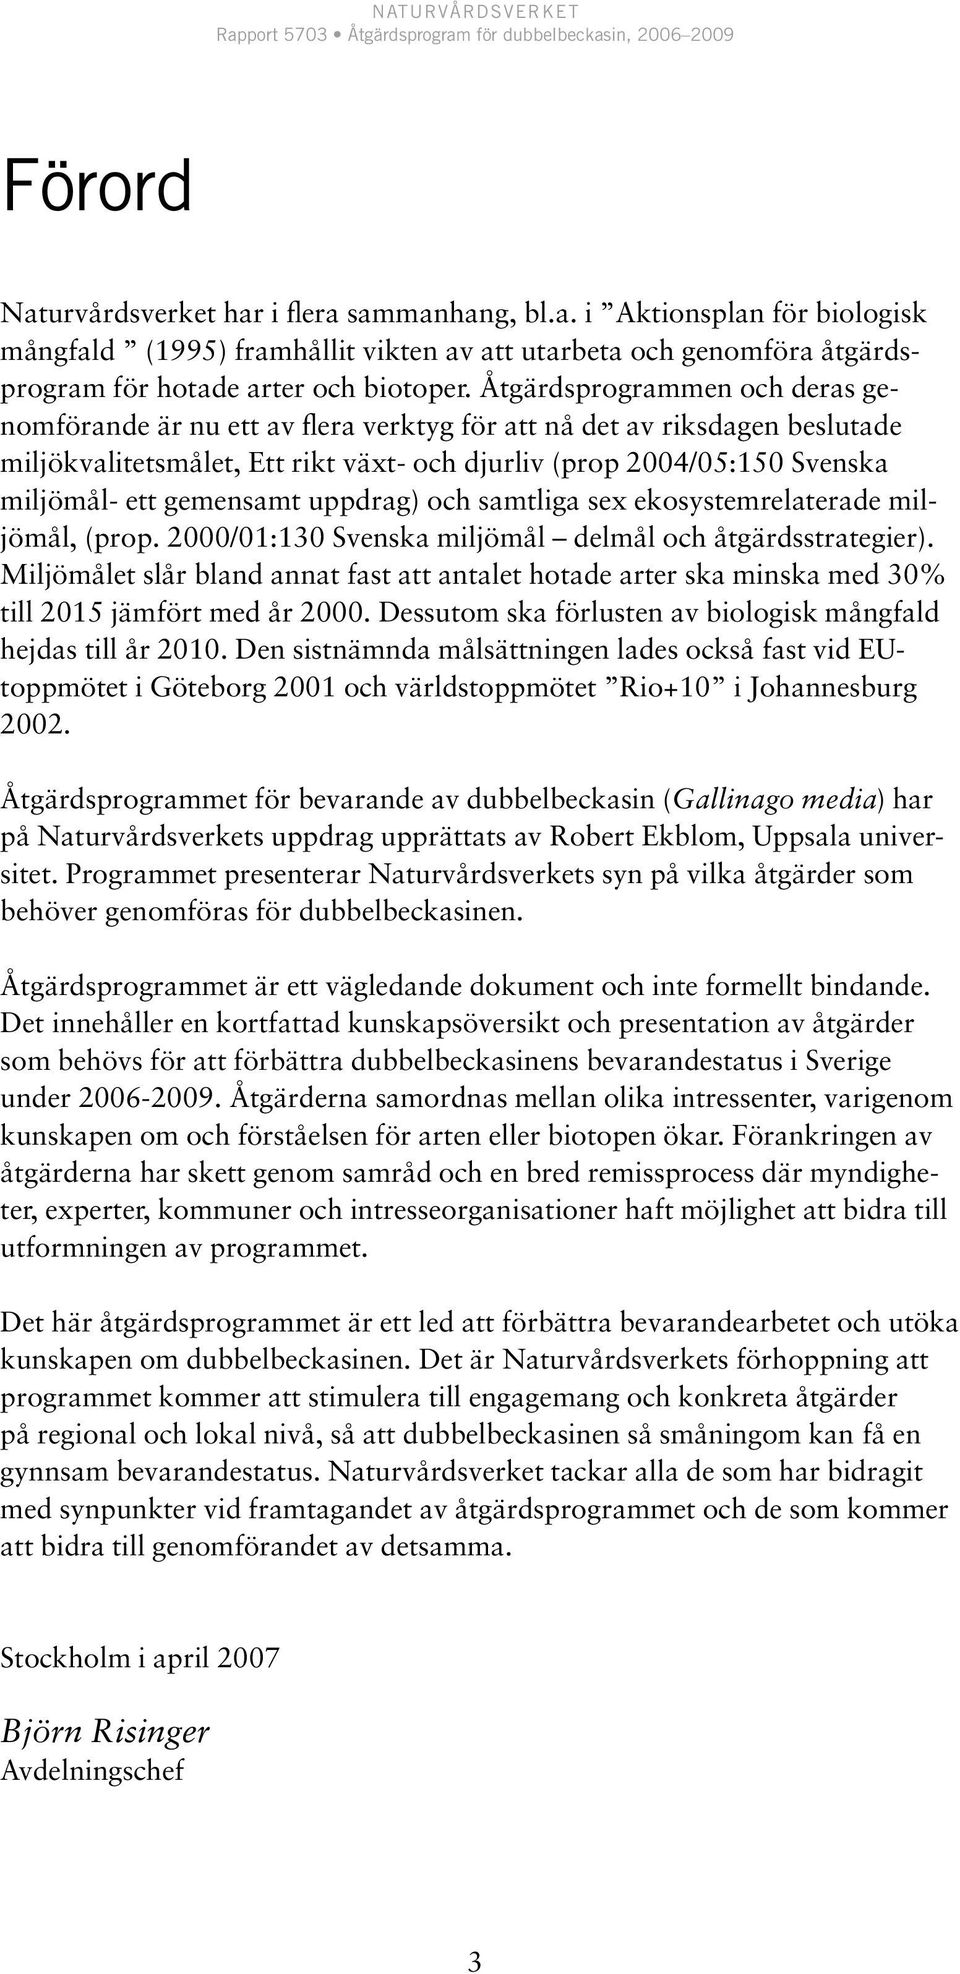 gemensamt uppdrag) och samtliga sex ekosystemrelaterade miljömål, (prop. 2000/01:130 Svenska miljömål delmål och åtgärdsstrategier).